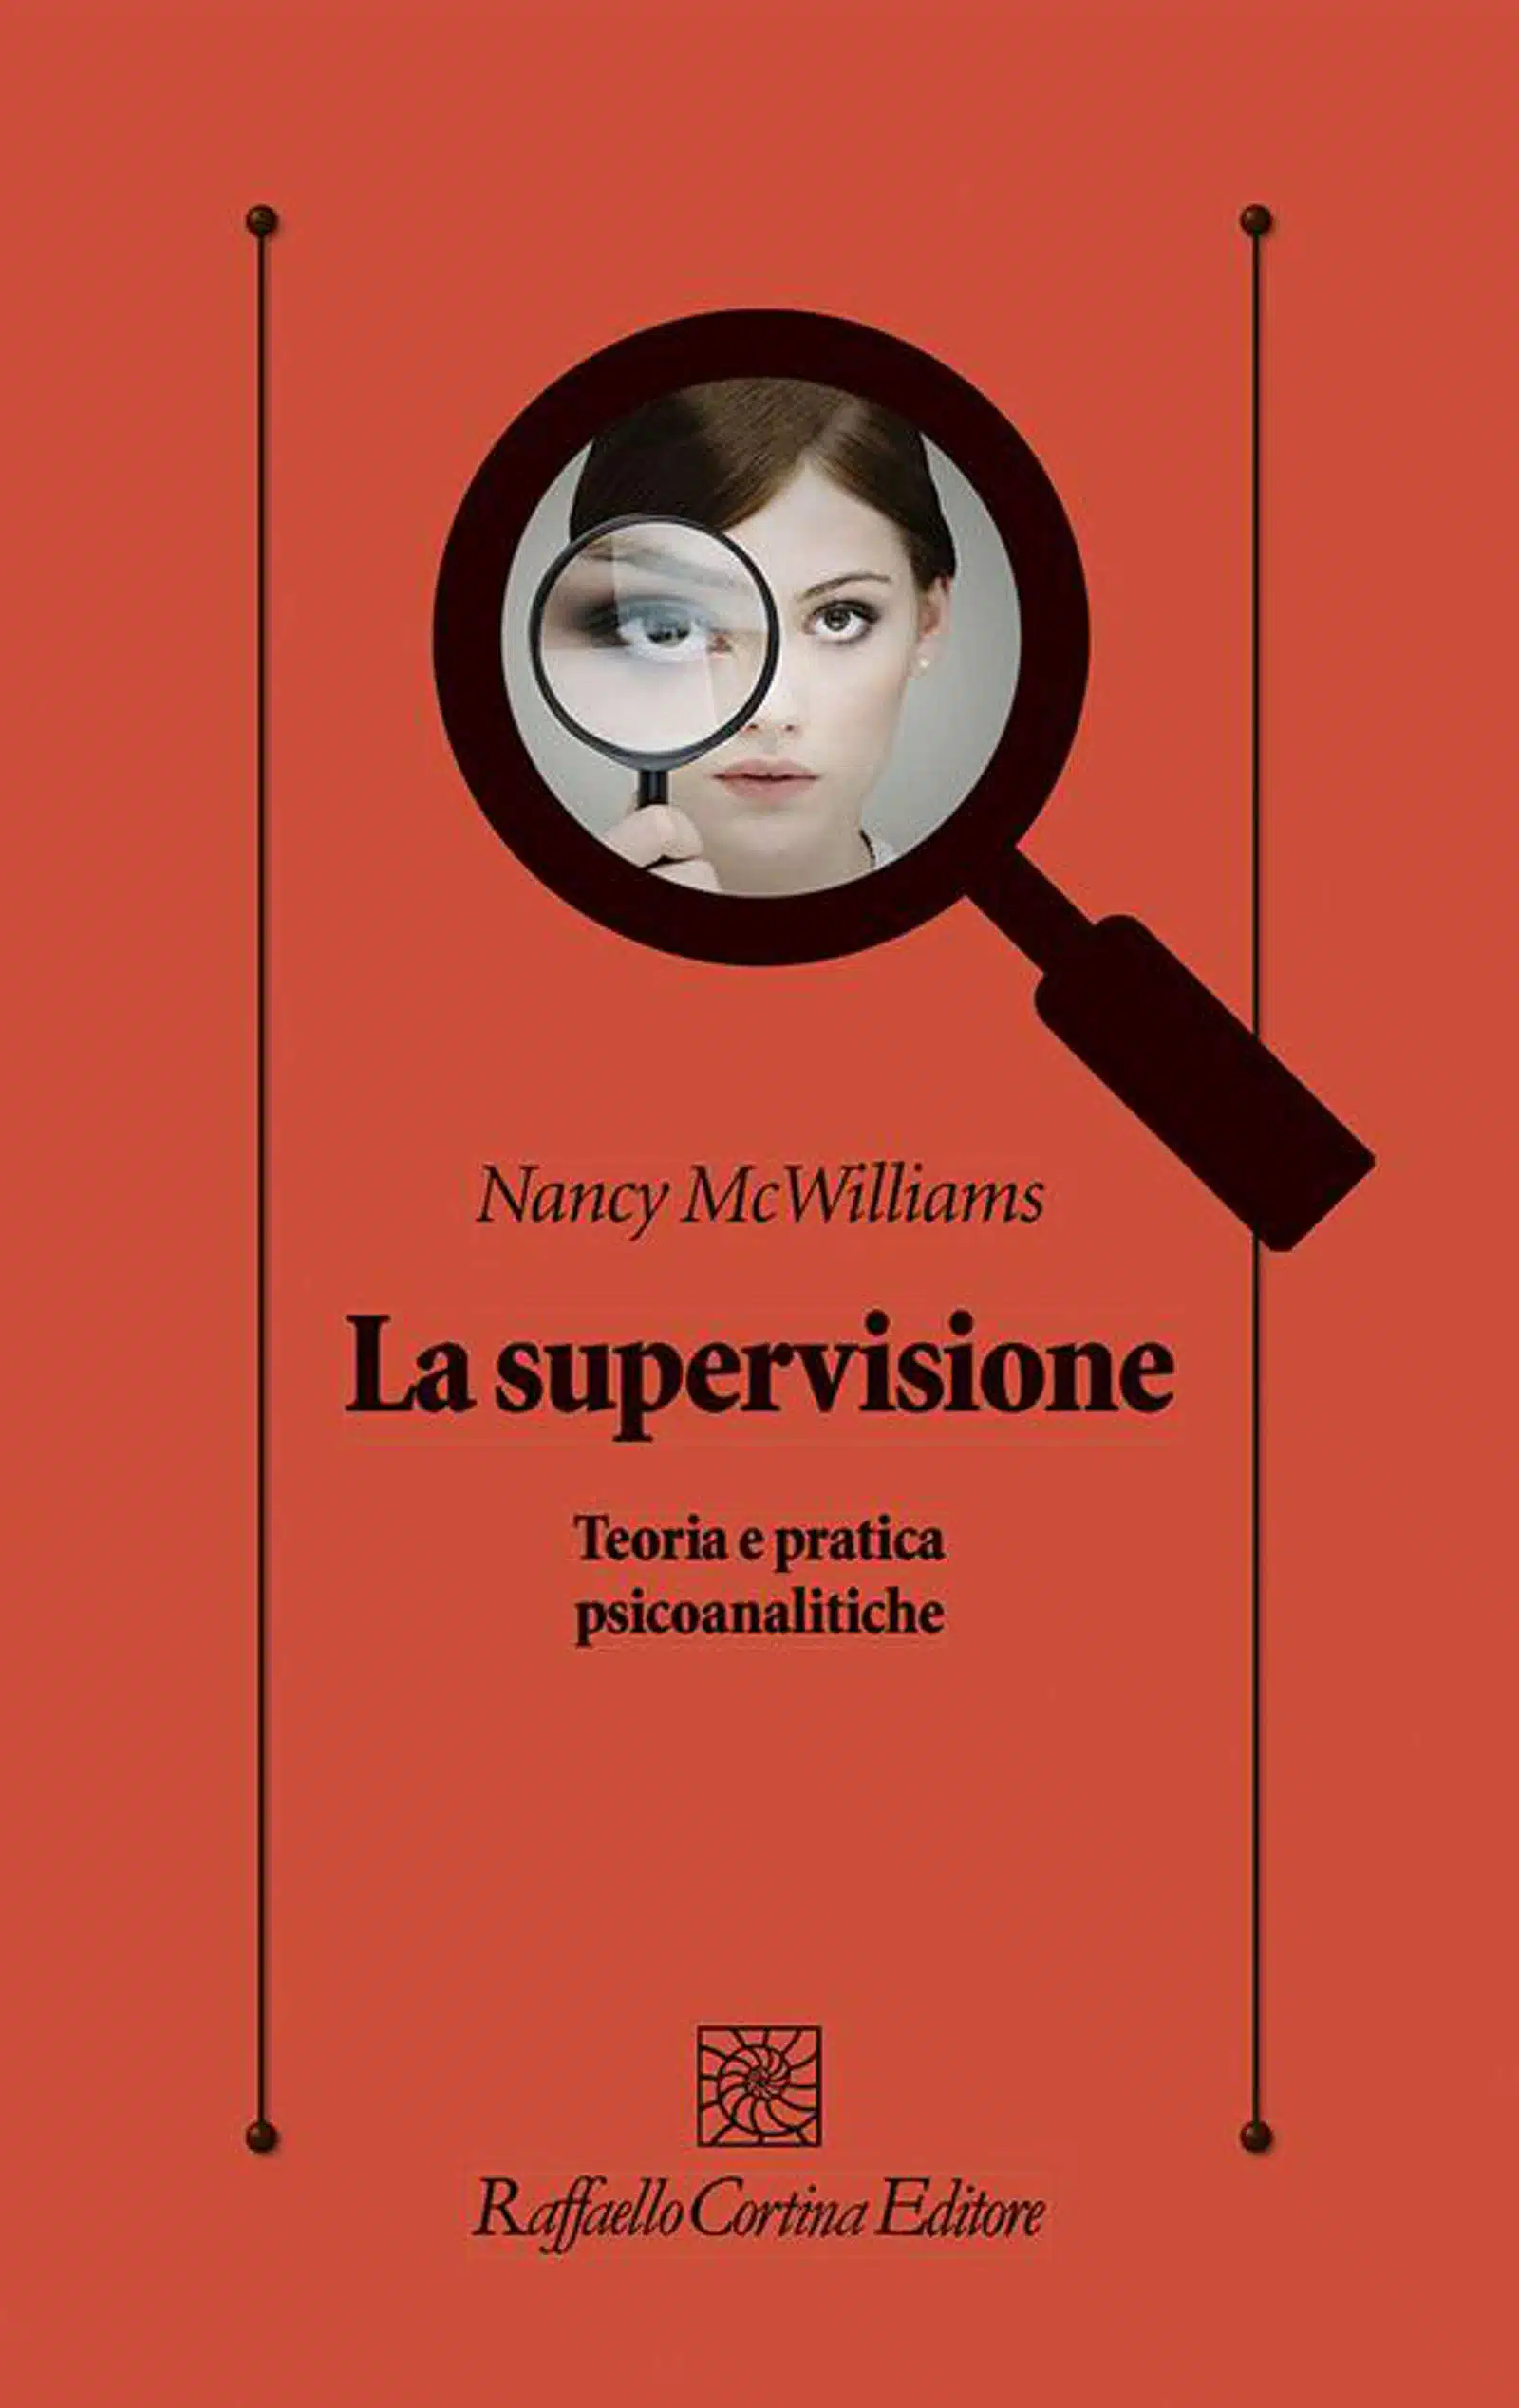 La supervisione 2022 di Nancy McWilliams Recensione del libro Featured